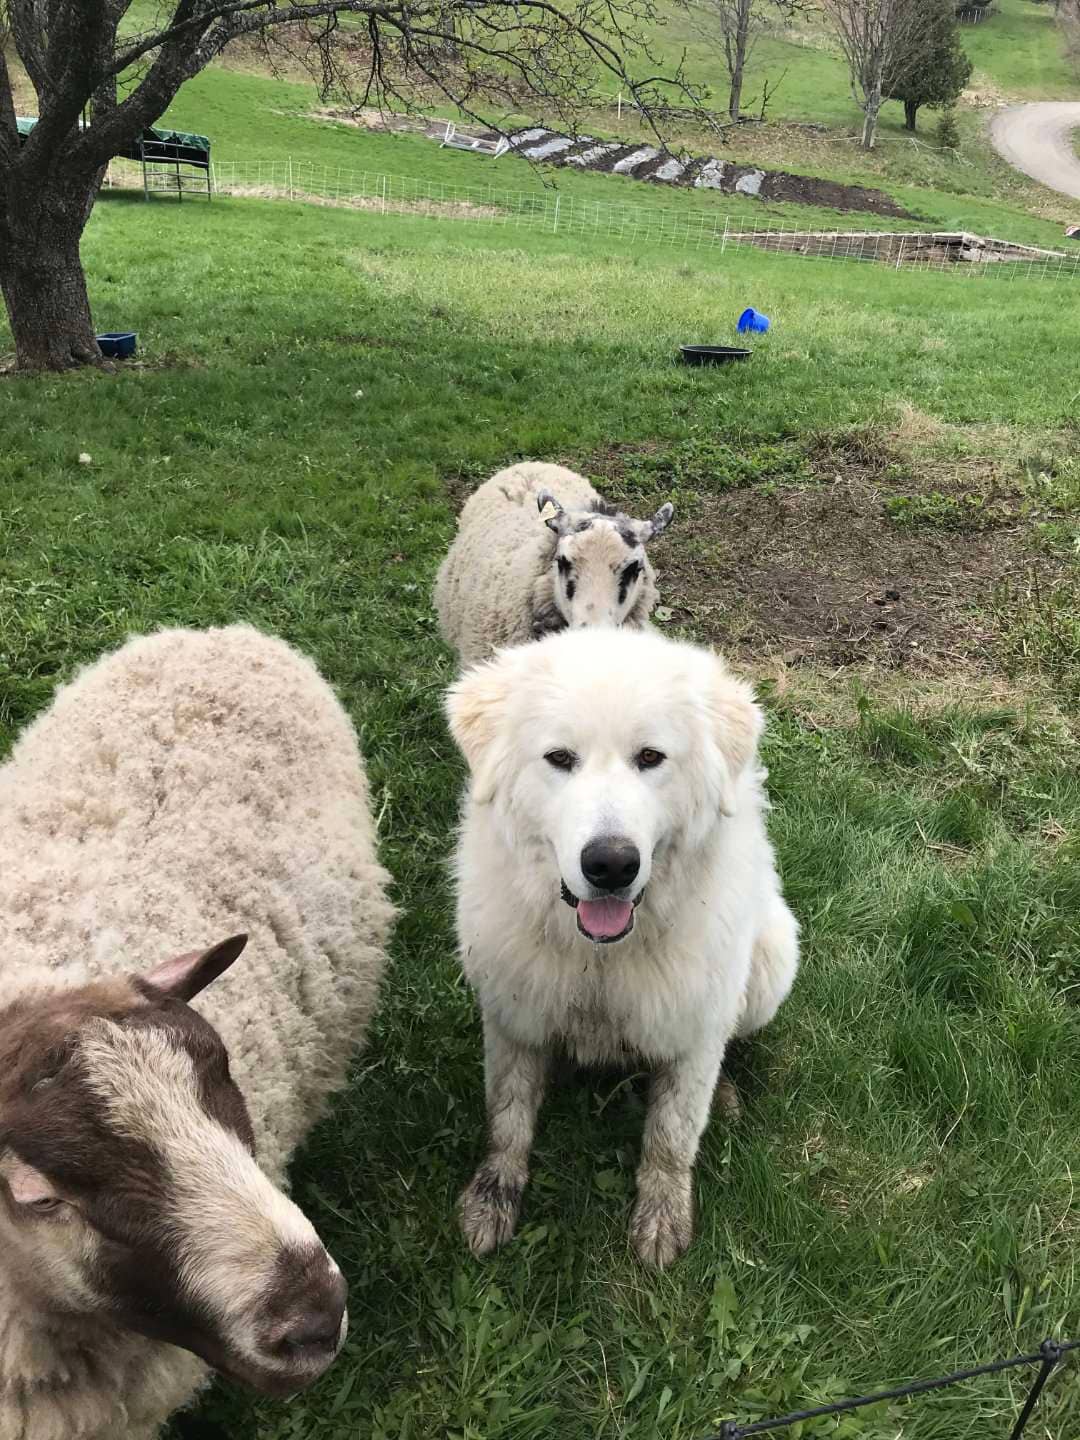 Pupster livestock guardian sheepdog with Finn Sheep